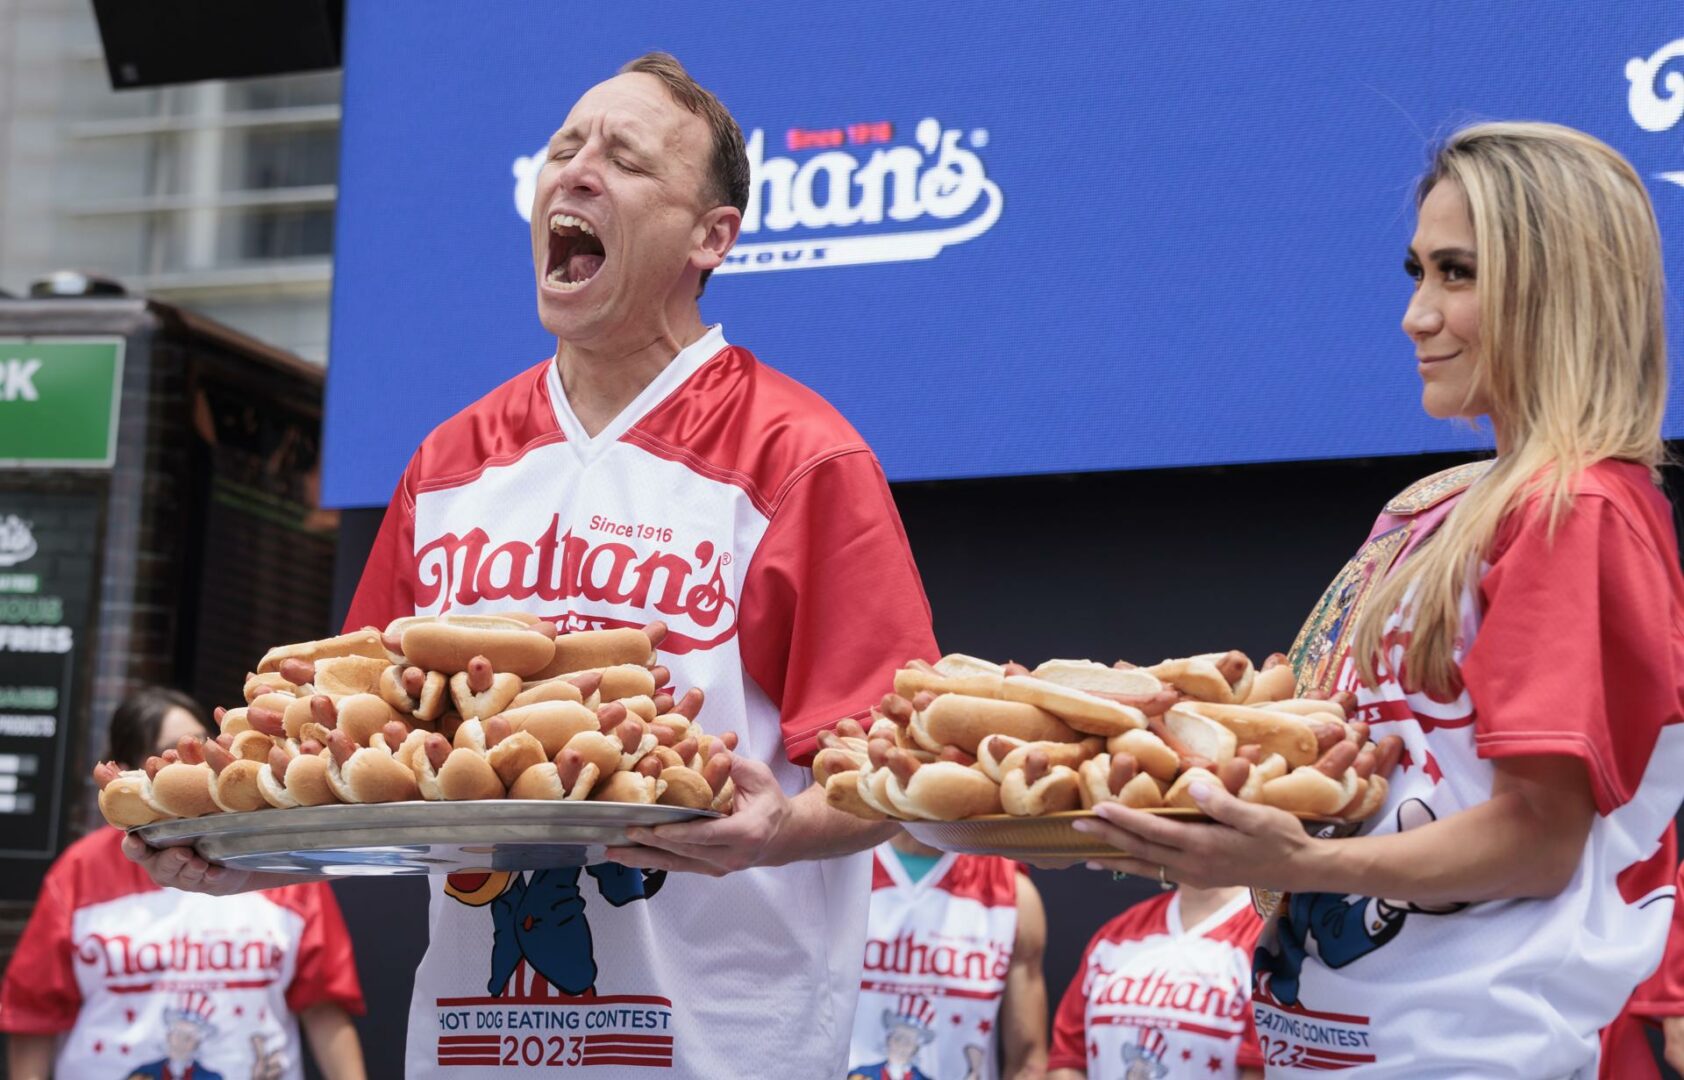 El rey del “hot dog” se corona de nuevo en el concurso de tragones de Nueva York